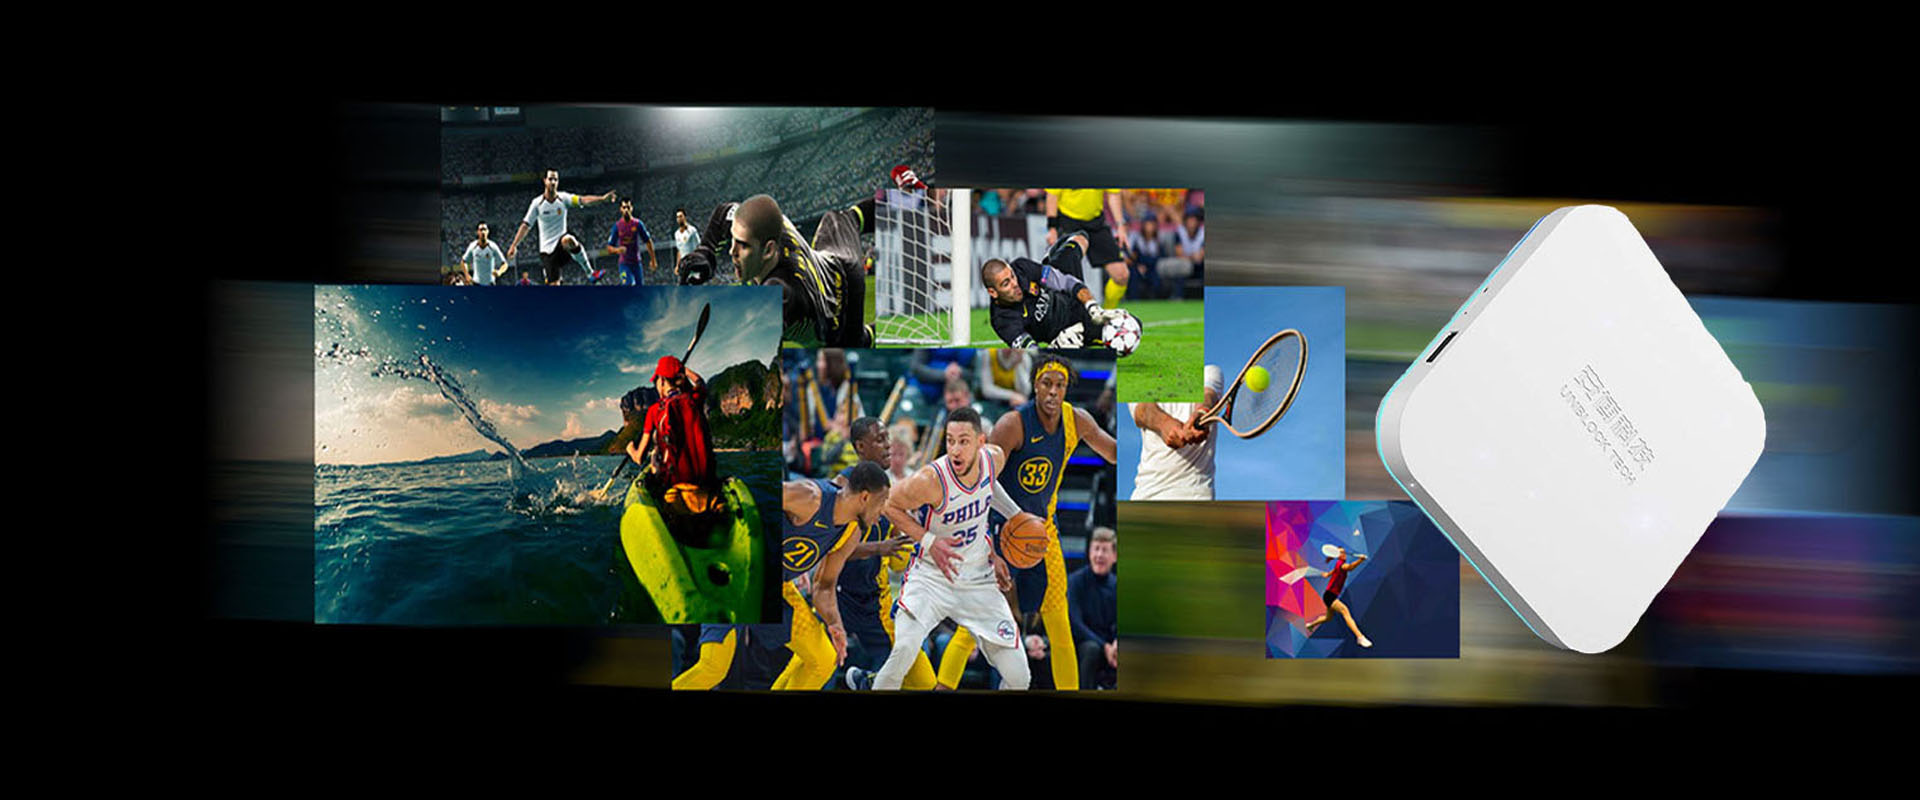 UNBLOCK TECH UBOX8 - Sports TV Box sur mesure pour les fans de sport